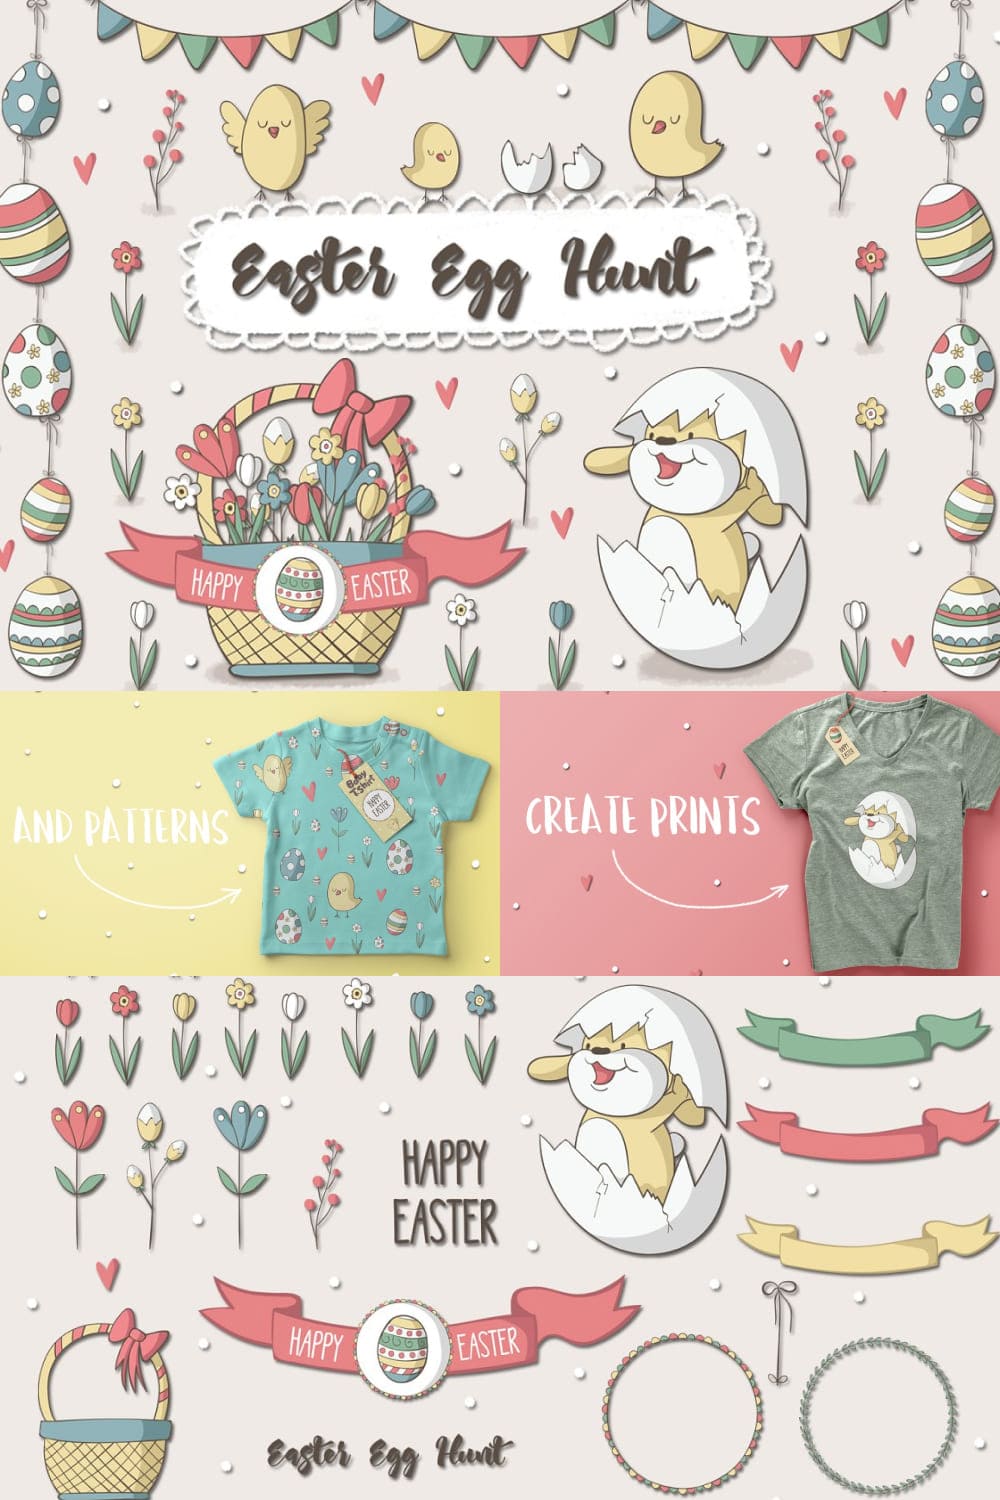 Easter Egg Hunt - Pinterest.